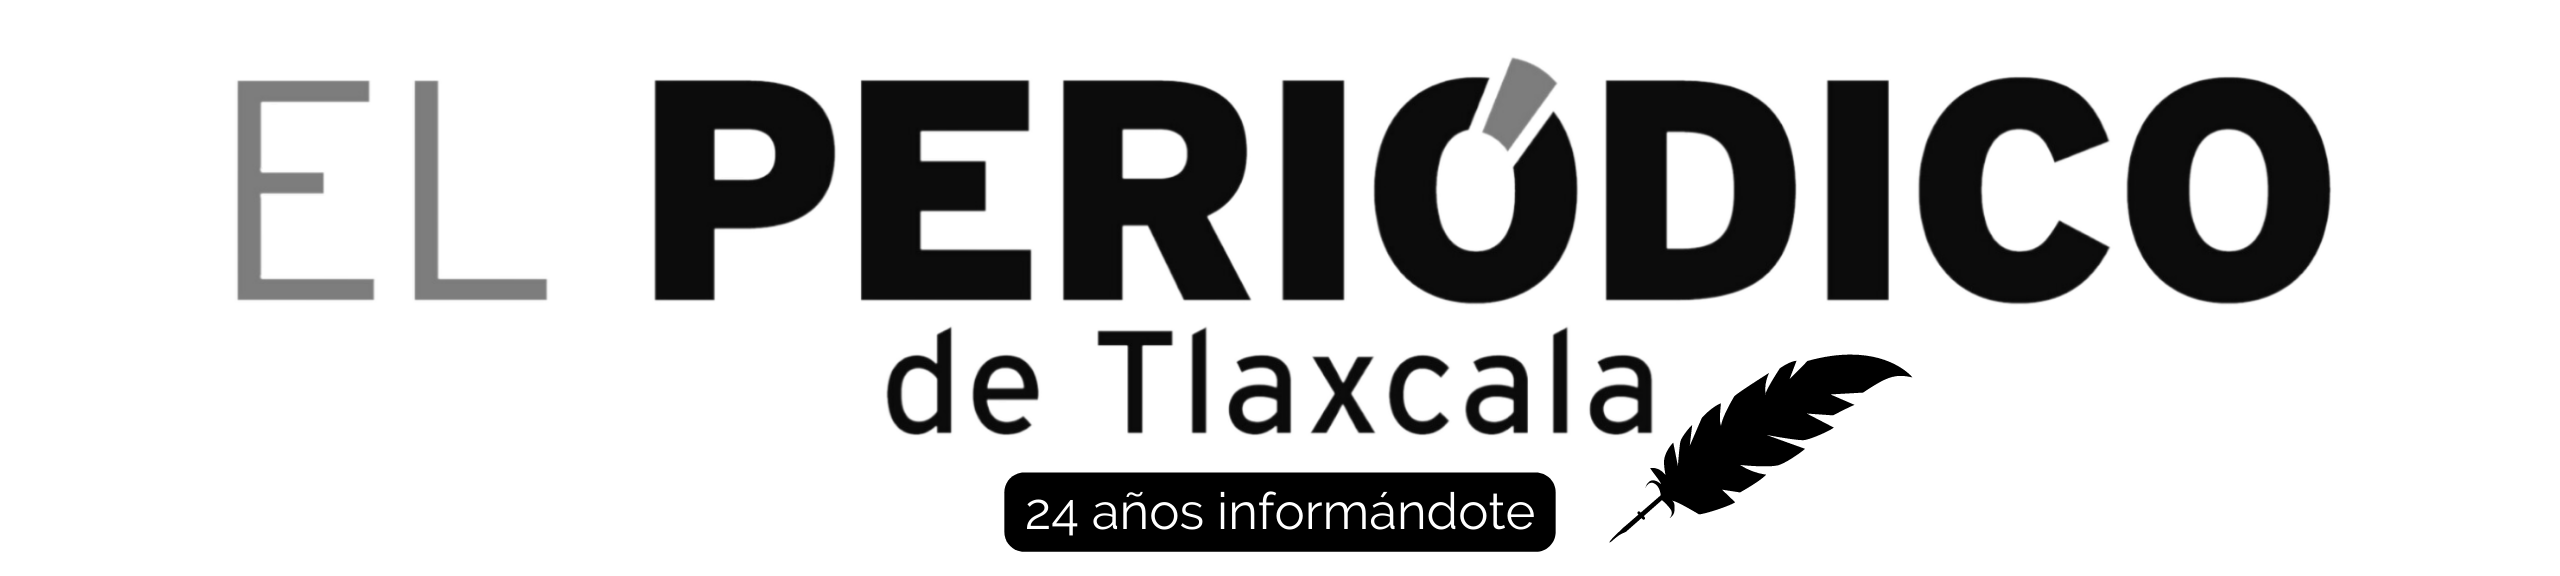 El Periódico de Tlaxcala